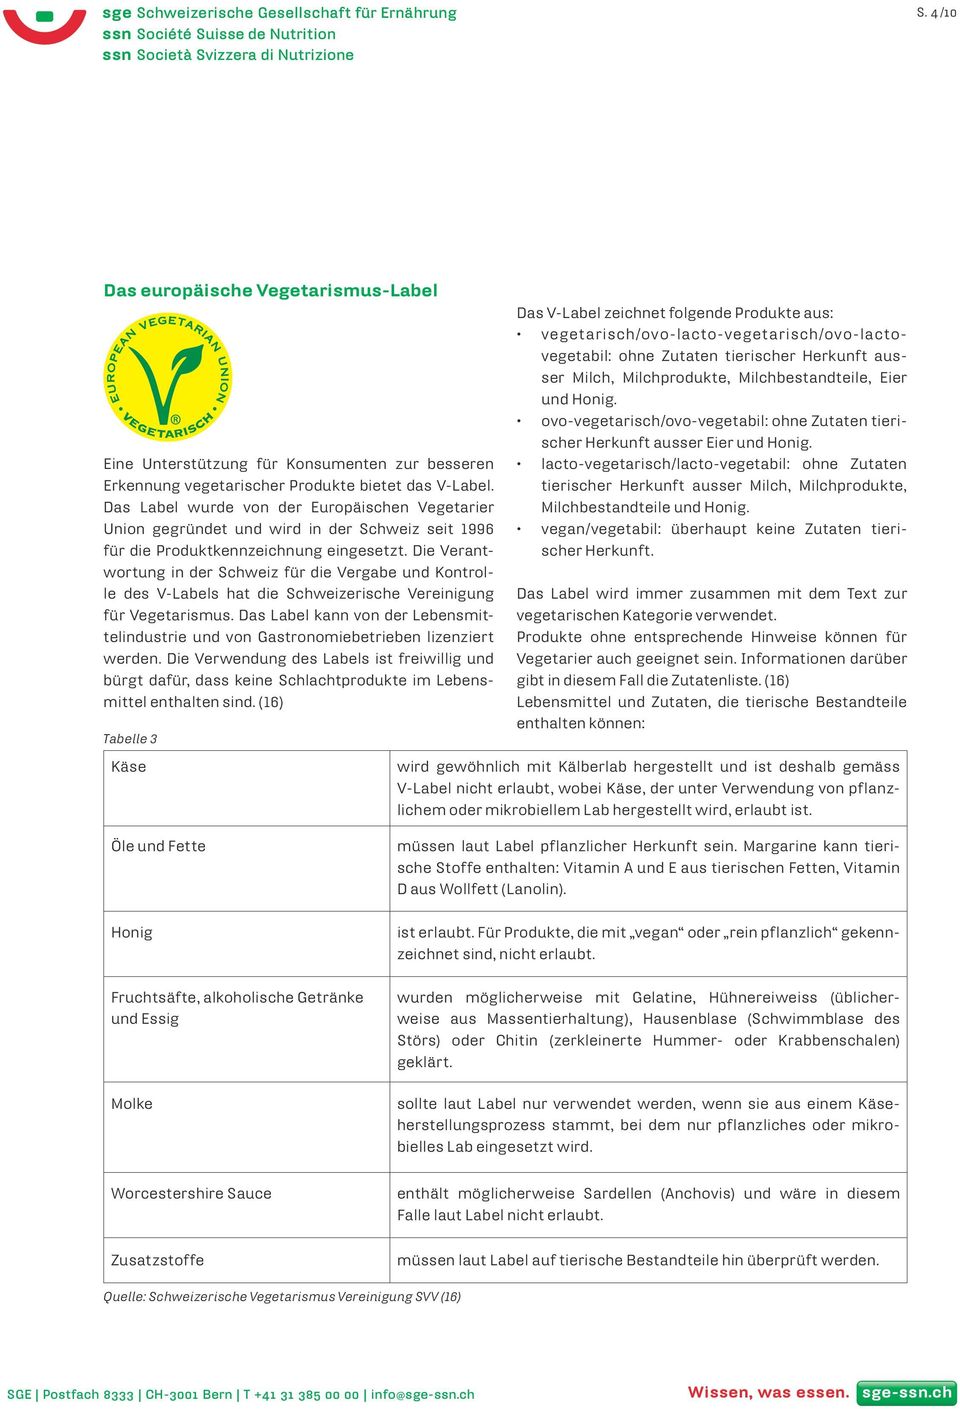 Die Verantwortung in der Schweiz für die Vergabe und Kontrolle des V-Labels hat die Schweizerische Vereinigung für Vegetarismus.